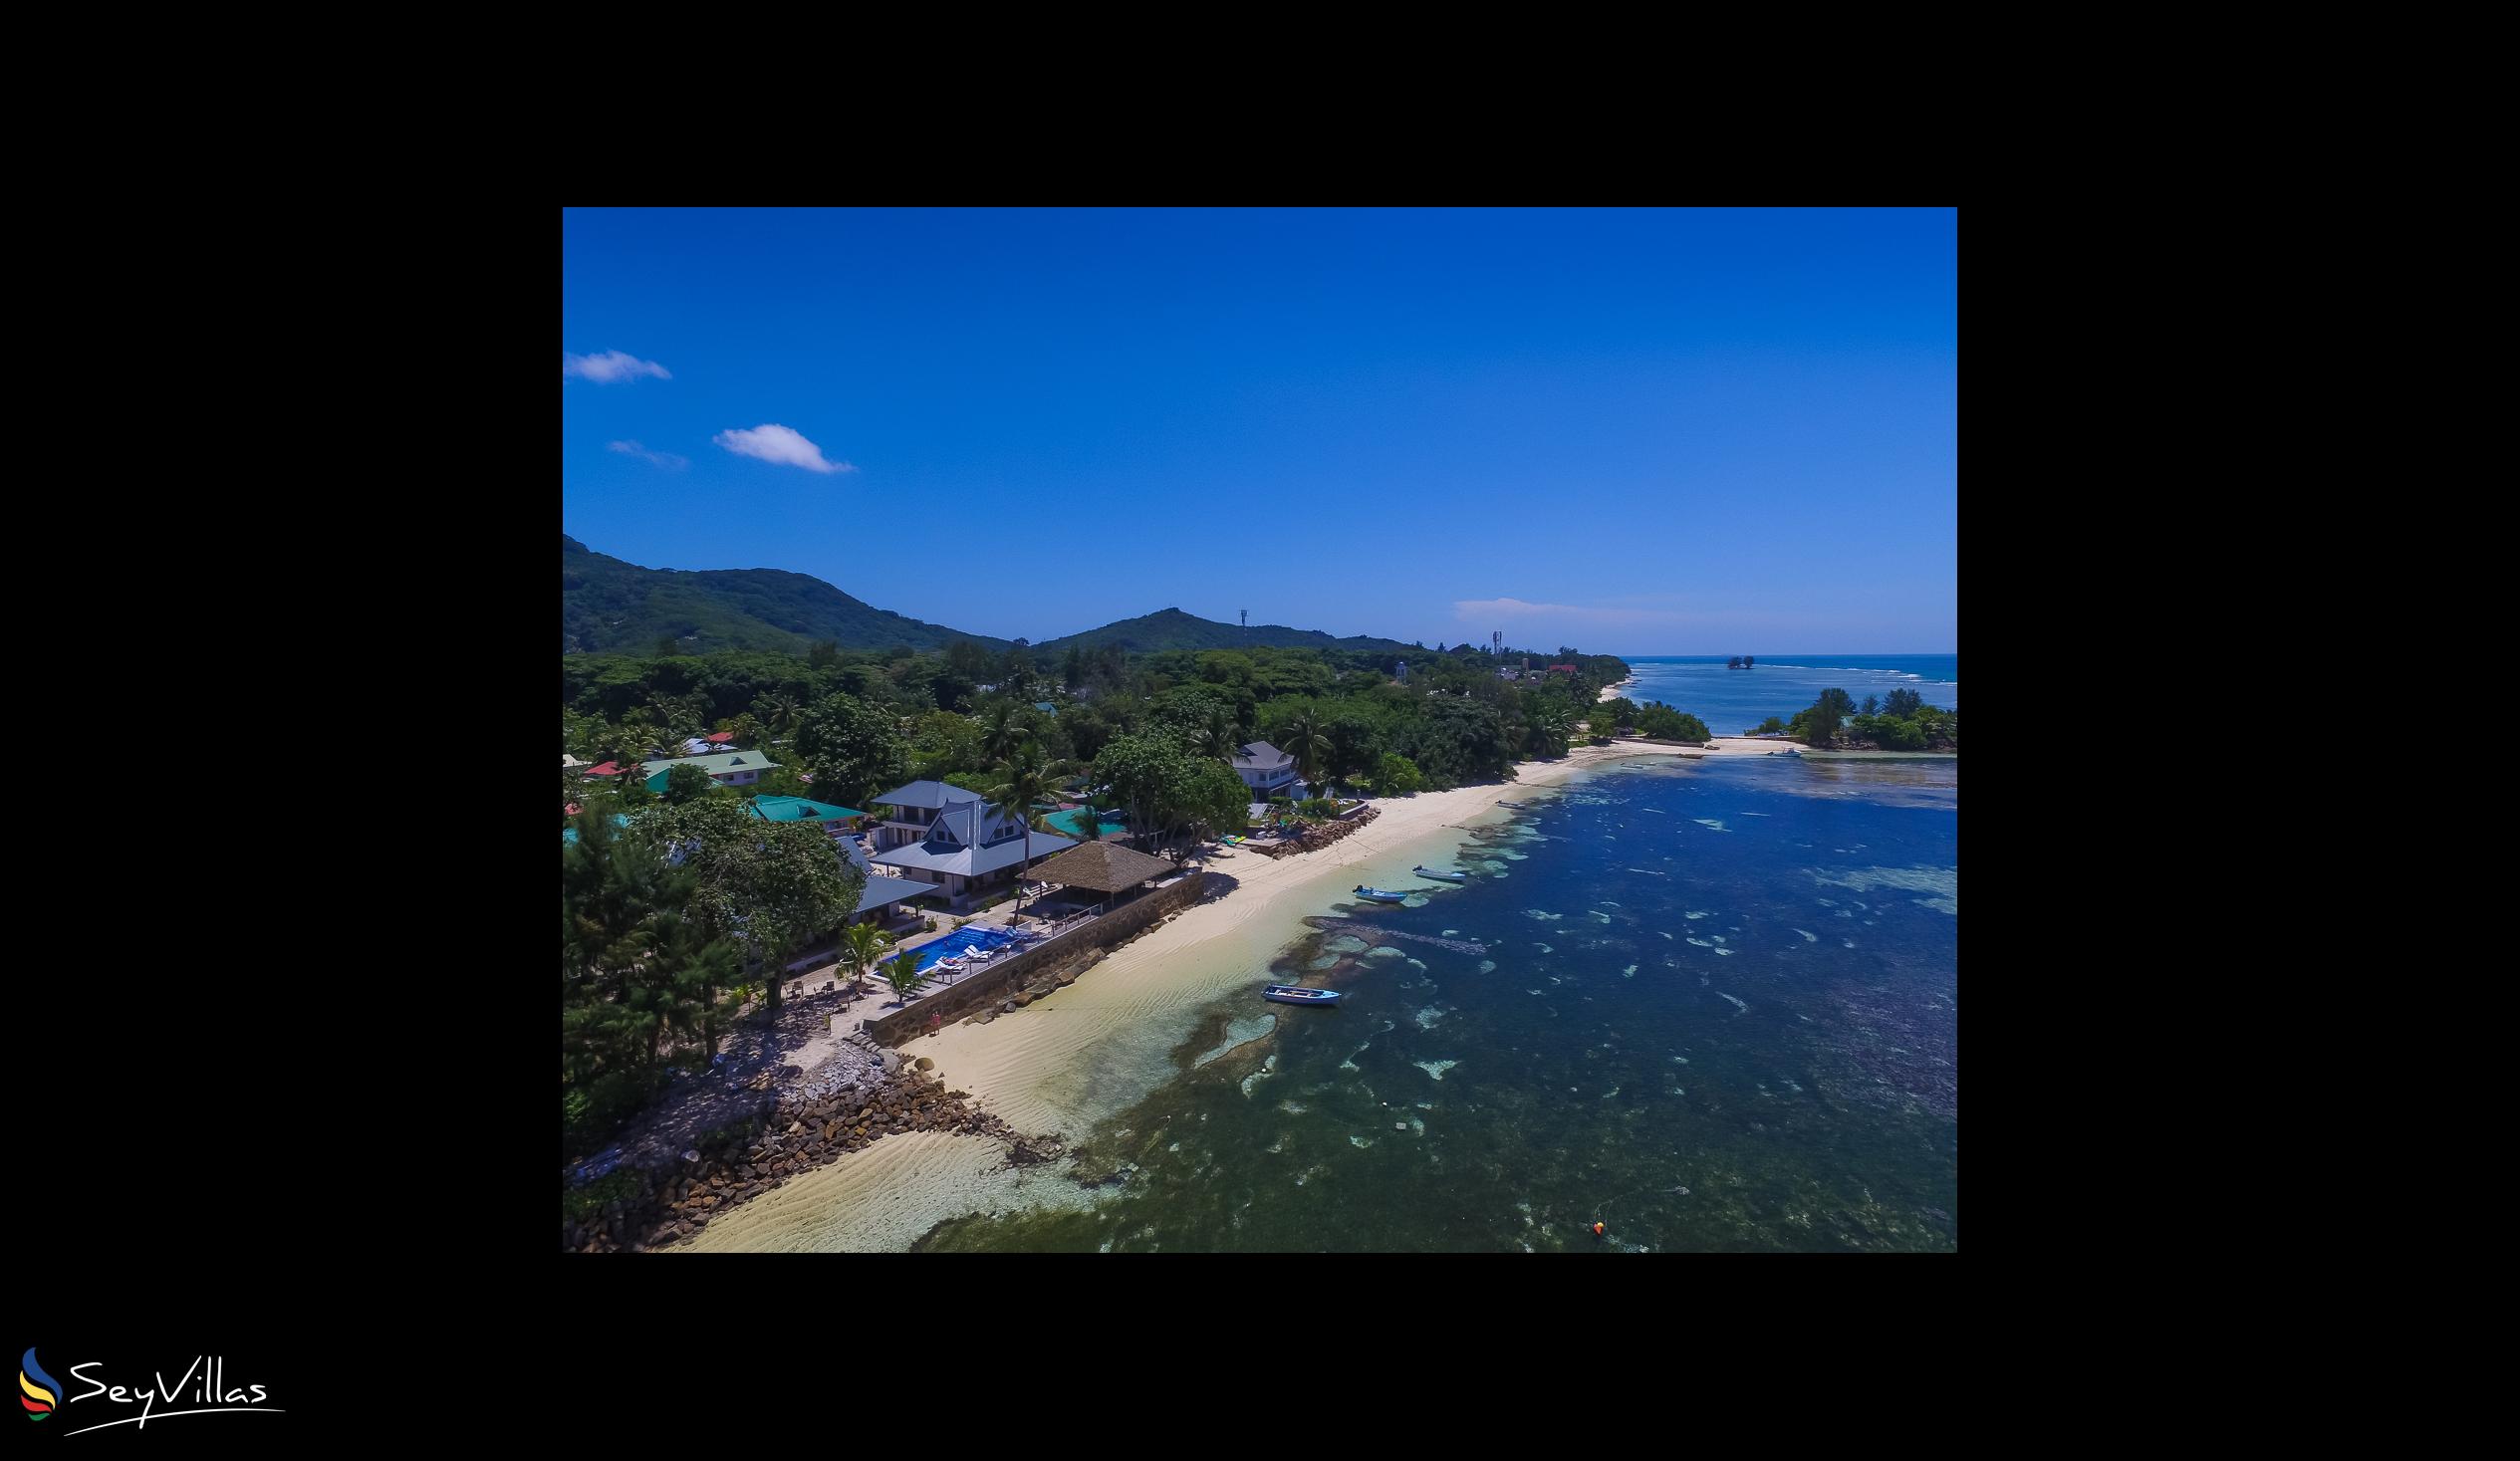 Photo 78: Le Nautique Luxury Waterfront Hotel - Location - La Digue (Seychelles)